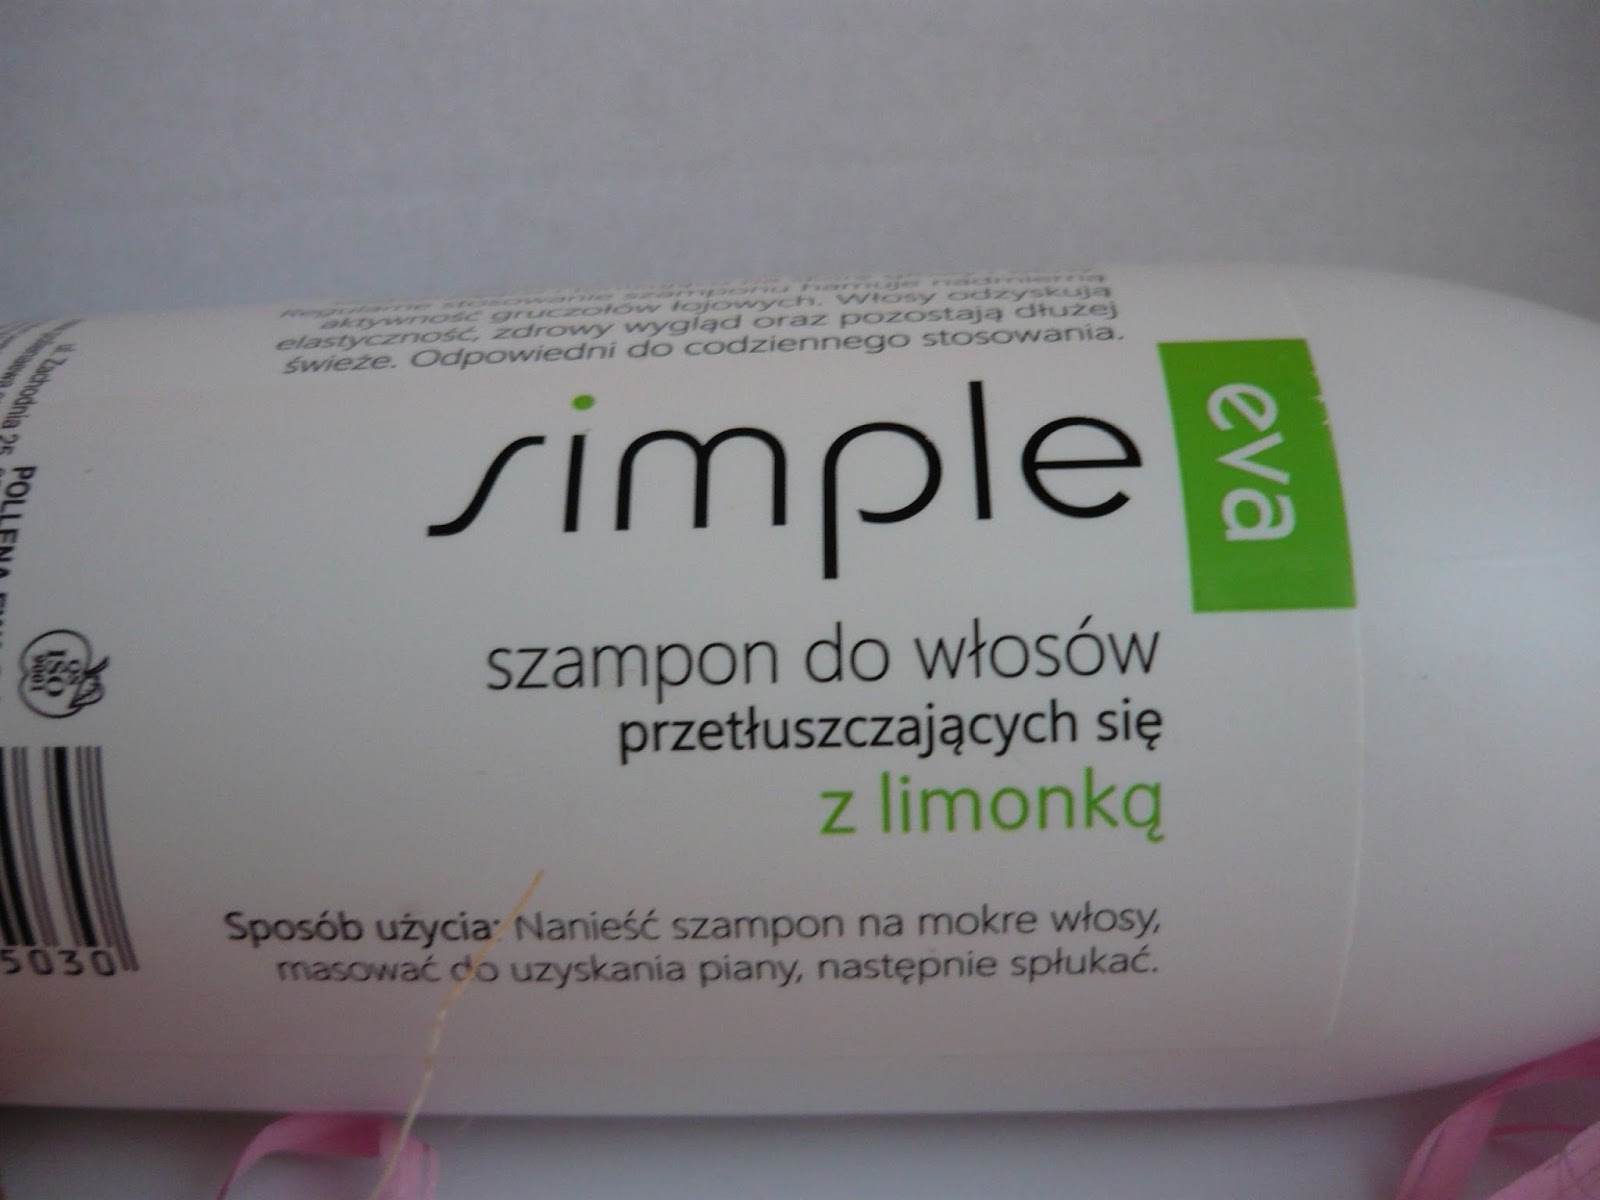 eva simple szampon do włosów przetłuszczających z limonka